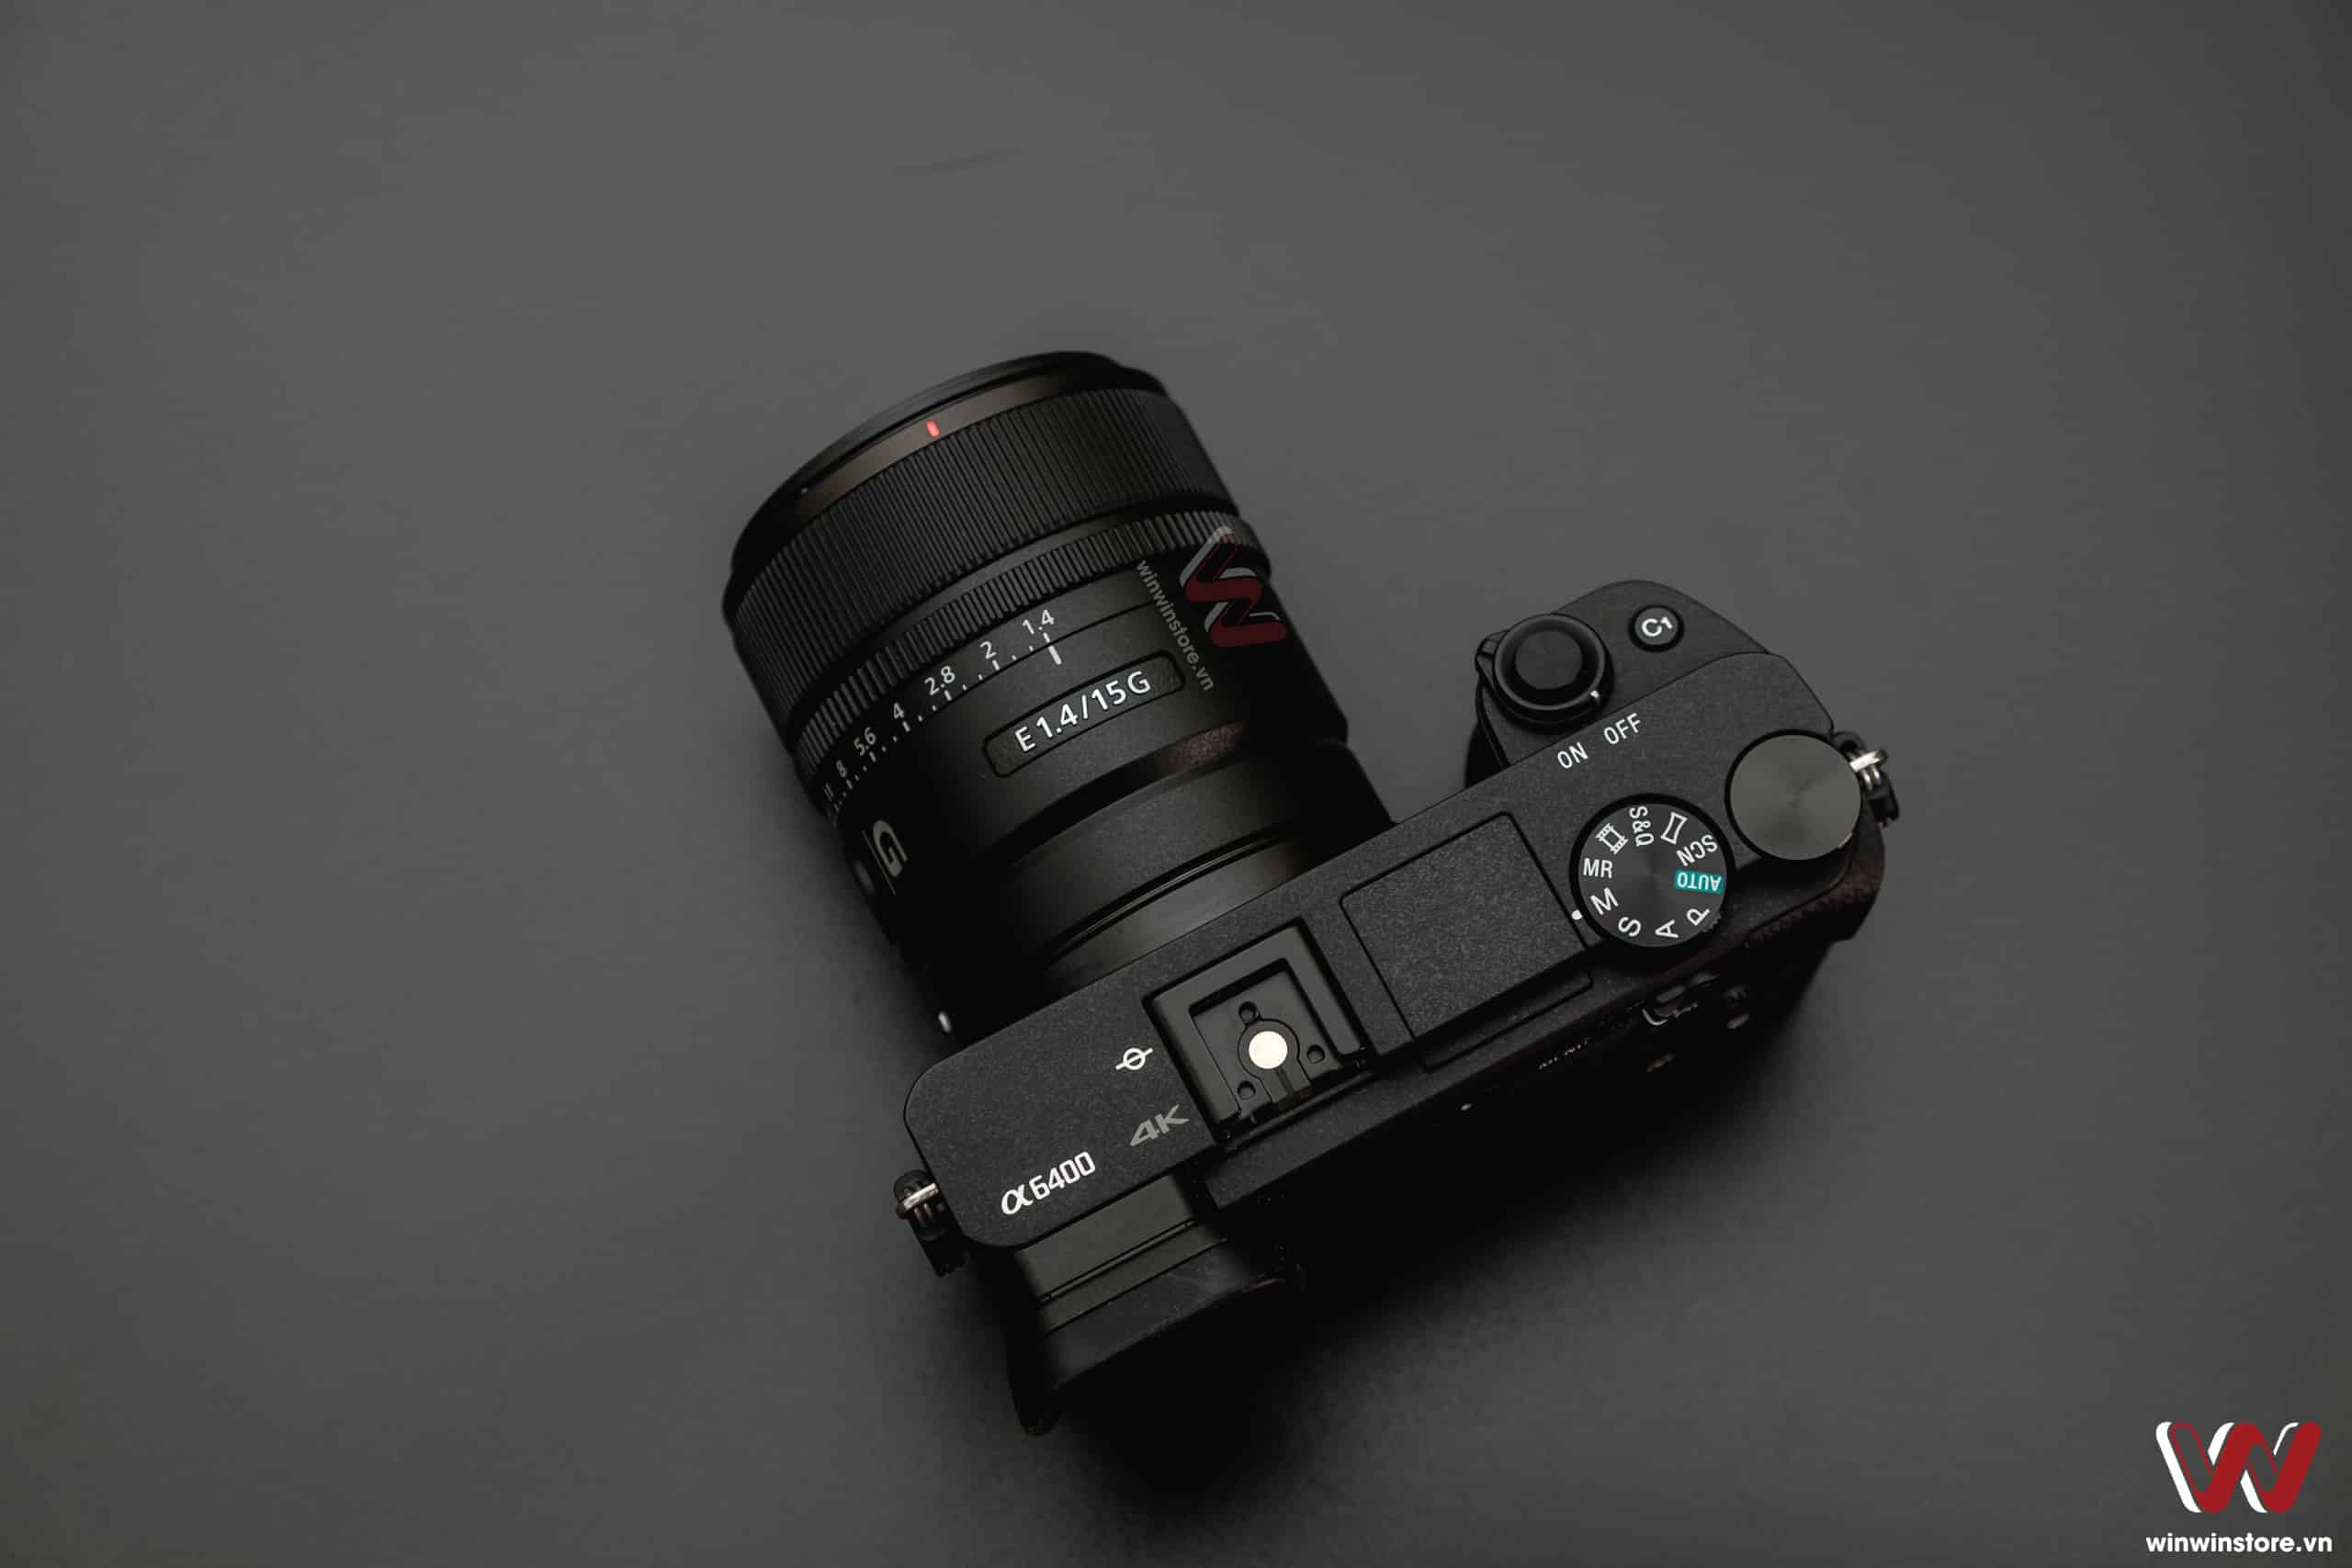 Trên tay ống kính Sony E 11mm F1.8 và 15mm F1.4 G, bộ đôi ống kính mới chất lượng dành cho APS-C